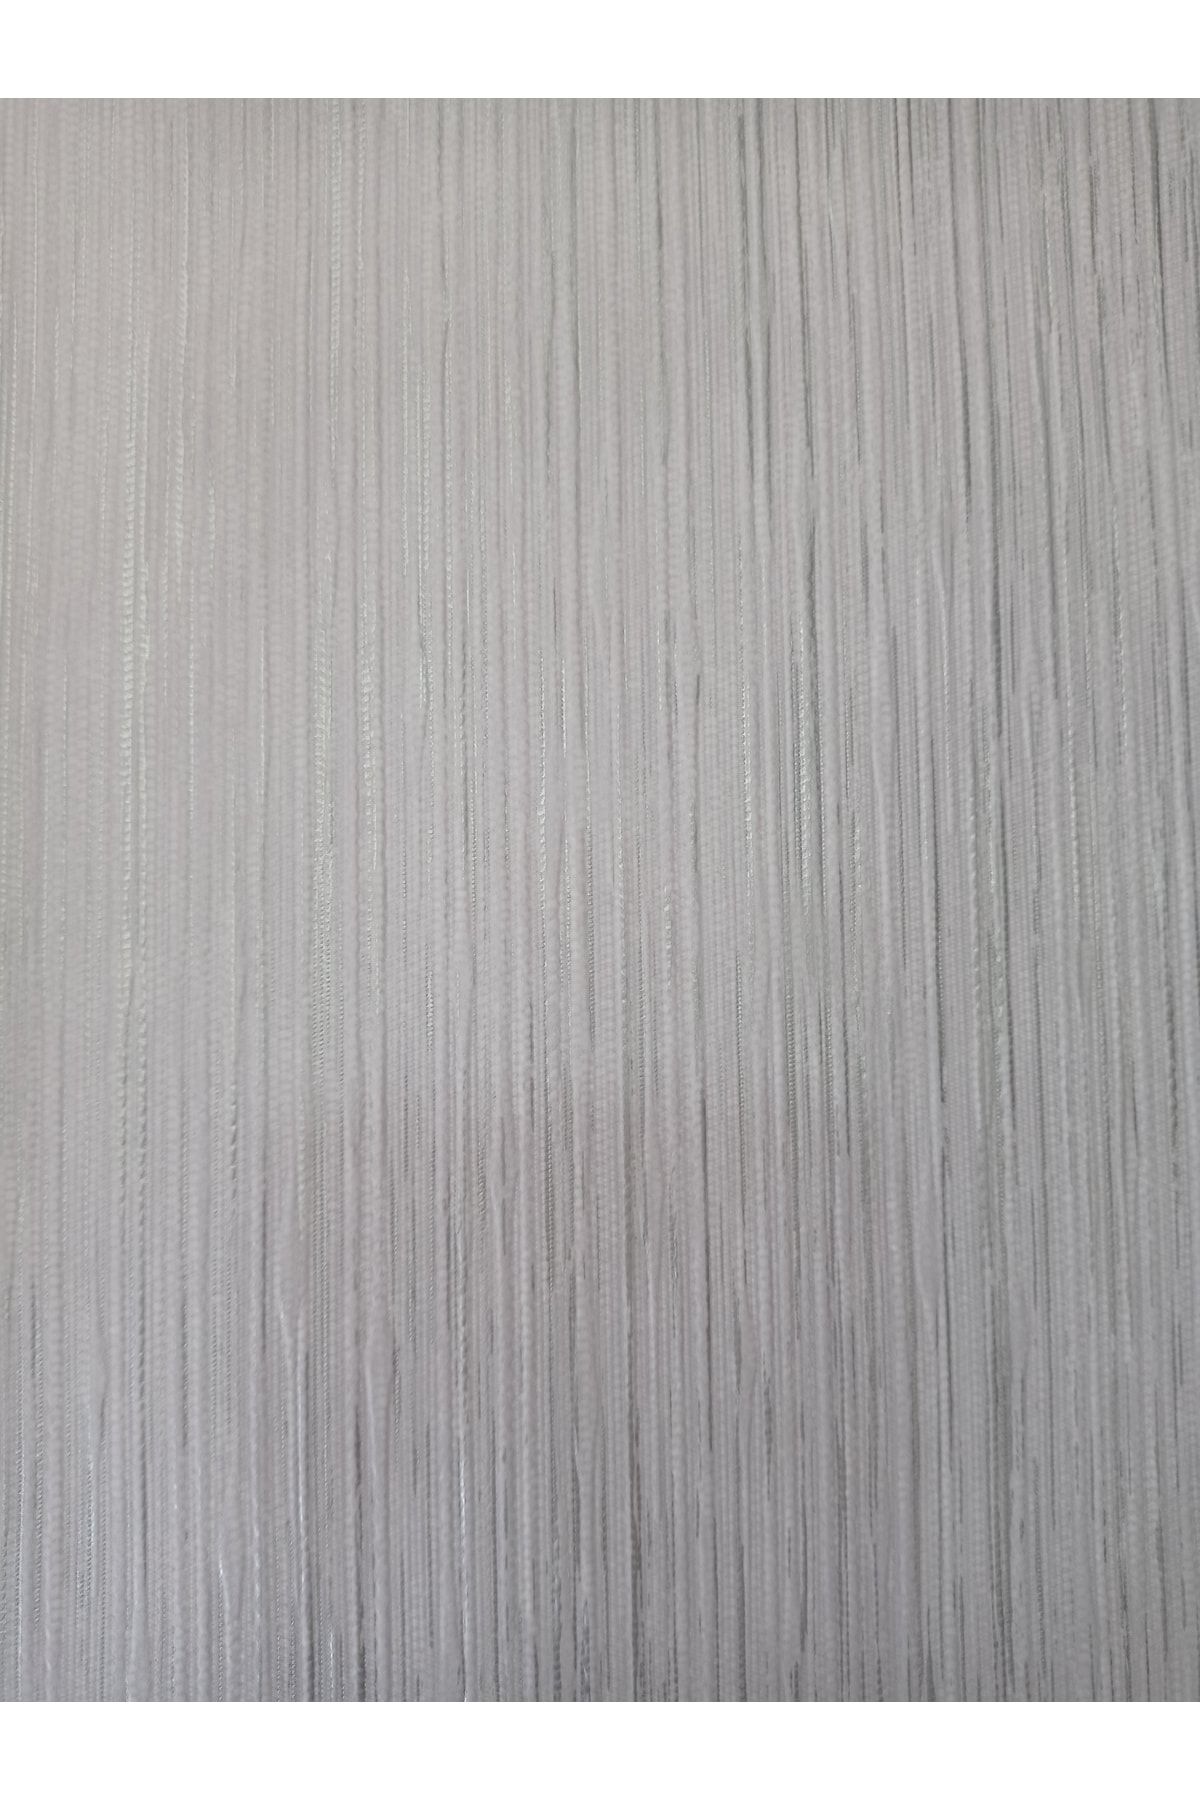 oskar Kendinden Desenli Dekoratif Kabartmalı Silinebilir Duvar Kağıdı (53cm Genişliğinde 10 Metre )